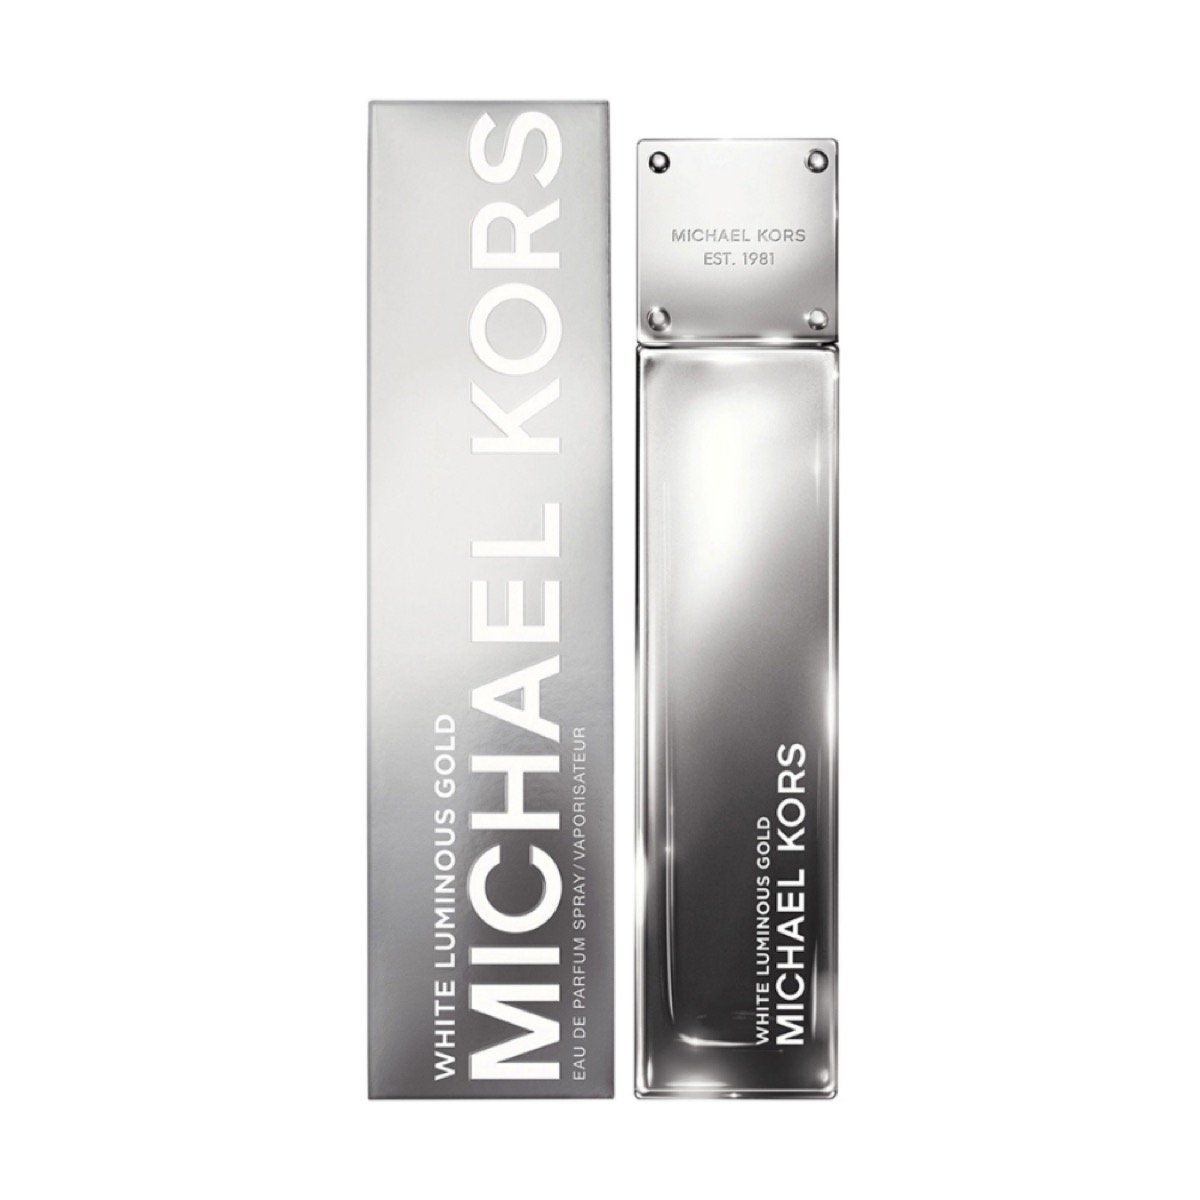 Michael Kors White Luminous Gold Perfume for Women 1.7 oz Eau de Parfum Spray